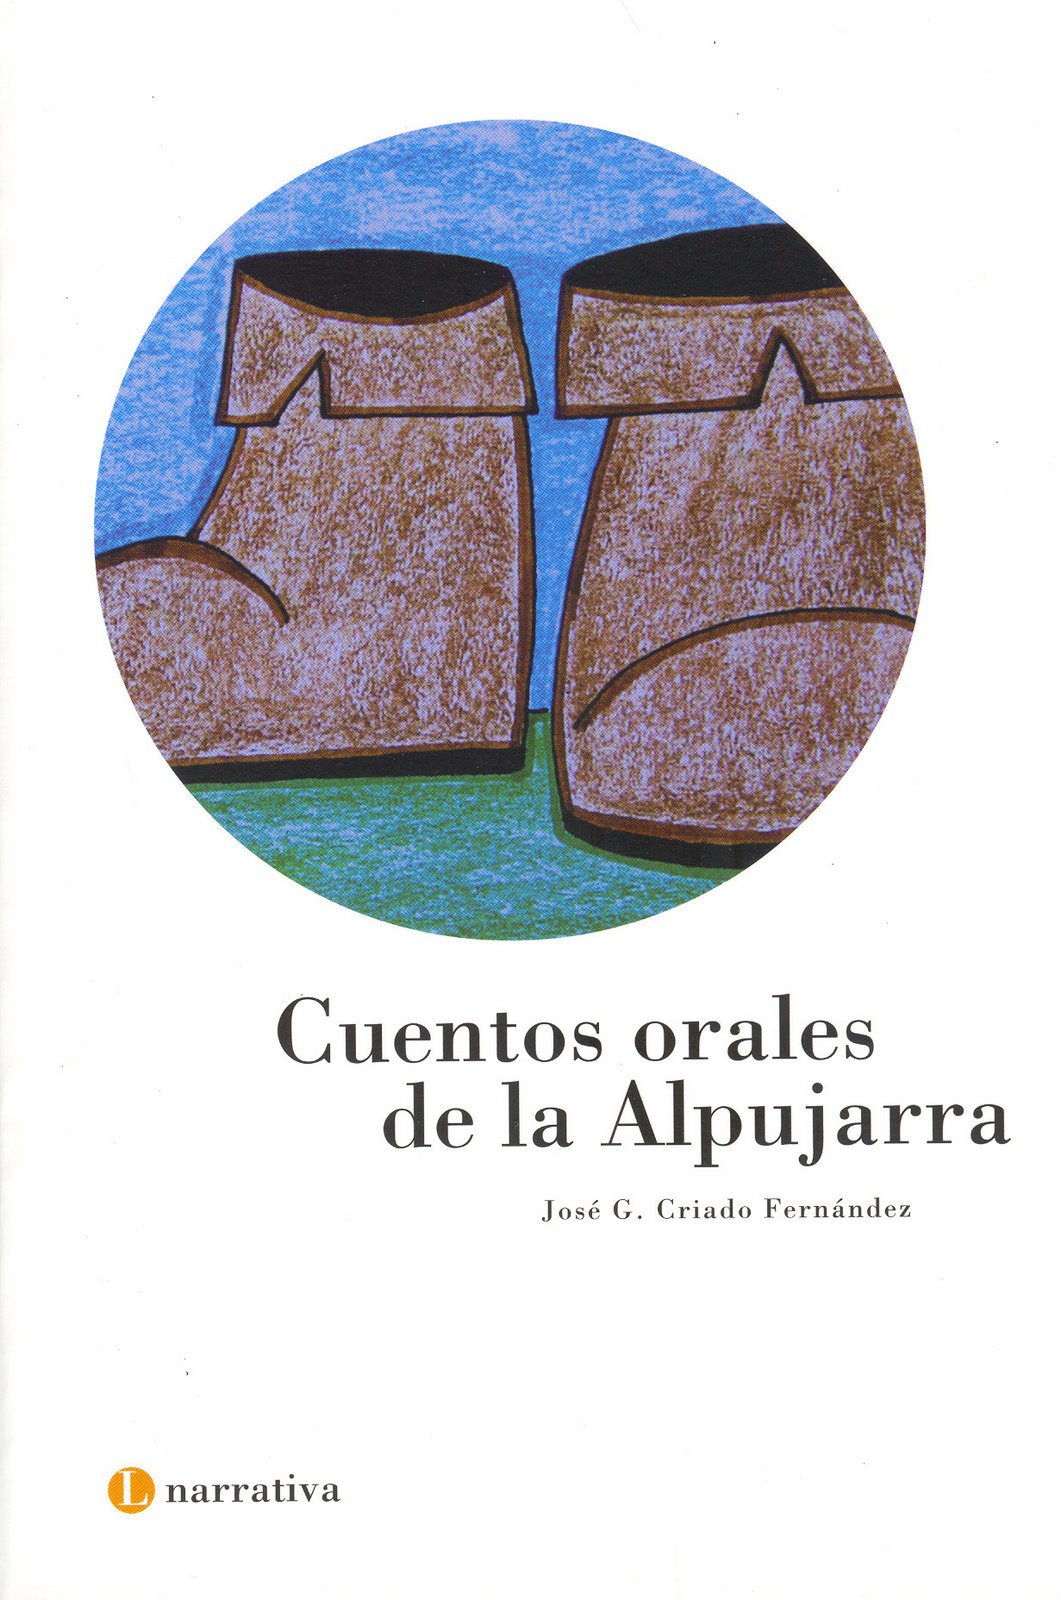 [2006+CUENTOS+ORALES+DE+LA+ALPUJARRA.jpg]